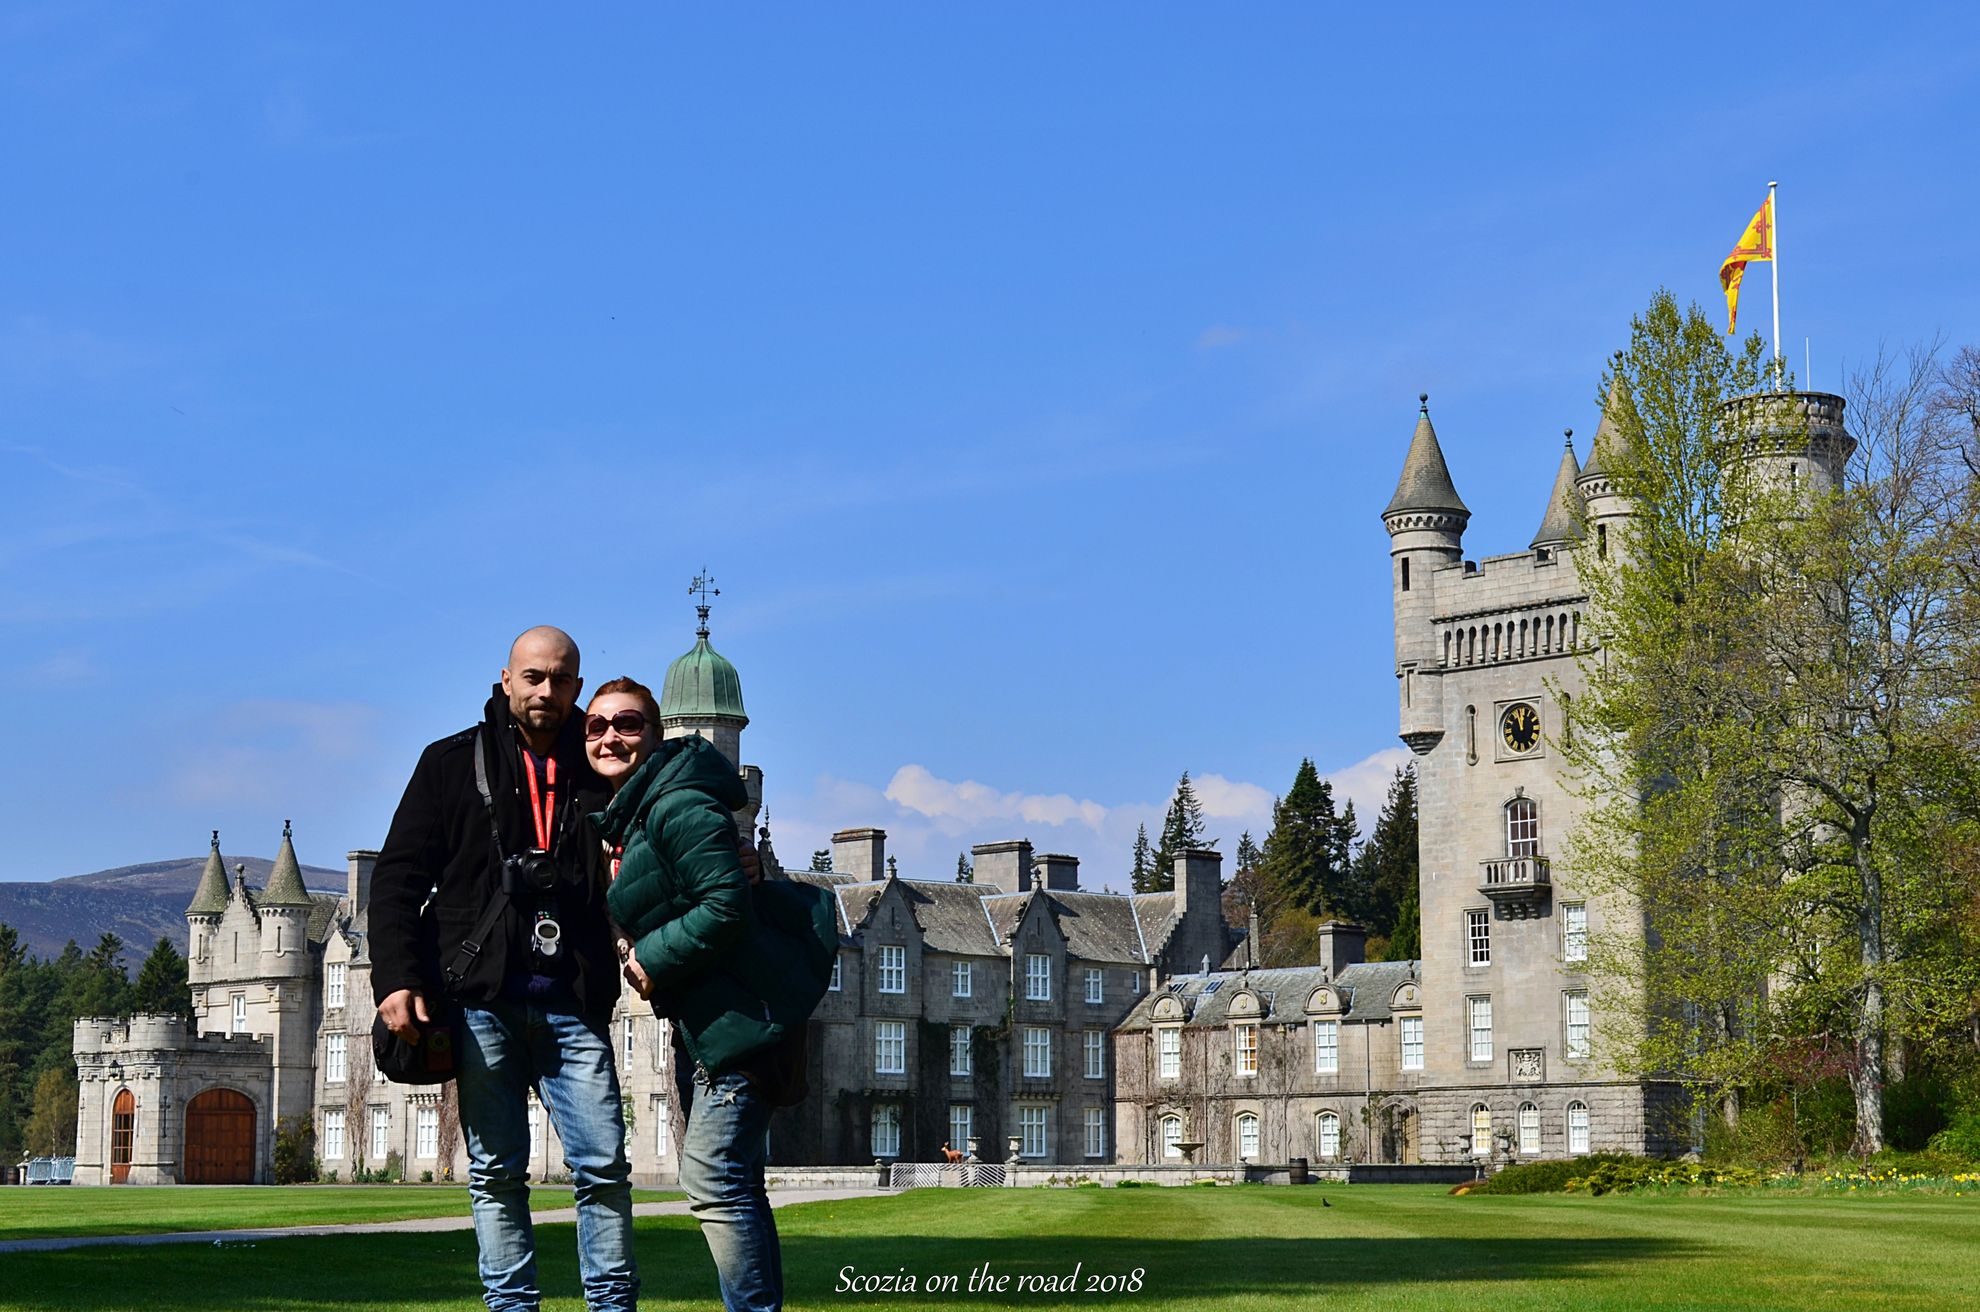 Balmoral castle, strada dei castelli in scozia, scotland castle trail e tour castelli scozia